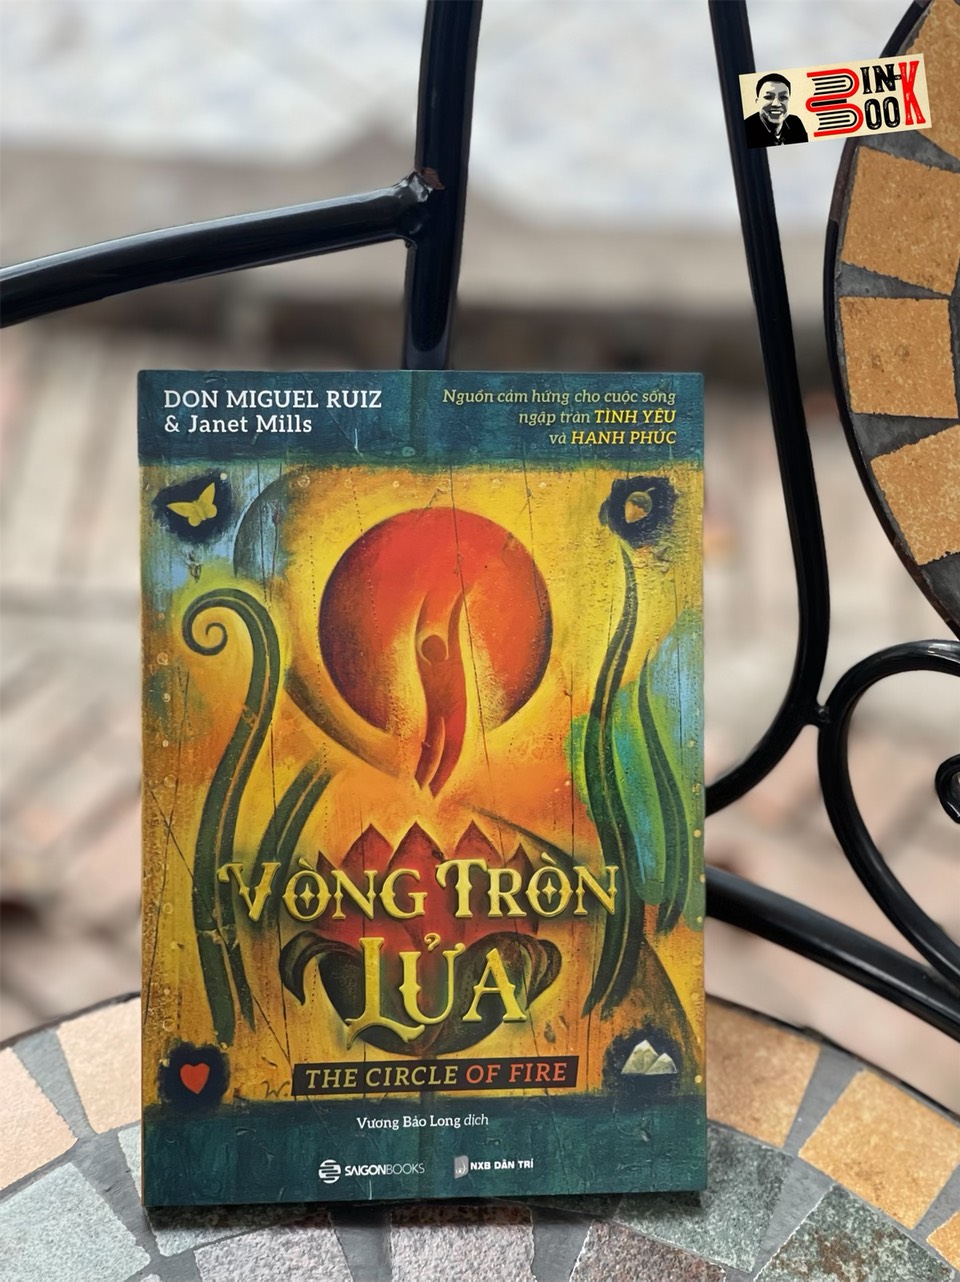 VÒNG TRÒN LỬA -Tác giả Don Miguel Ruiz - Nguyễn Phi Vân  dịch - Saigonbooks – NXB Dân Trí